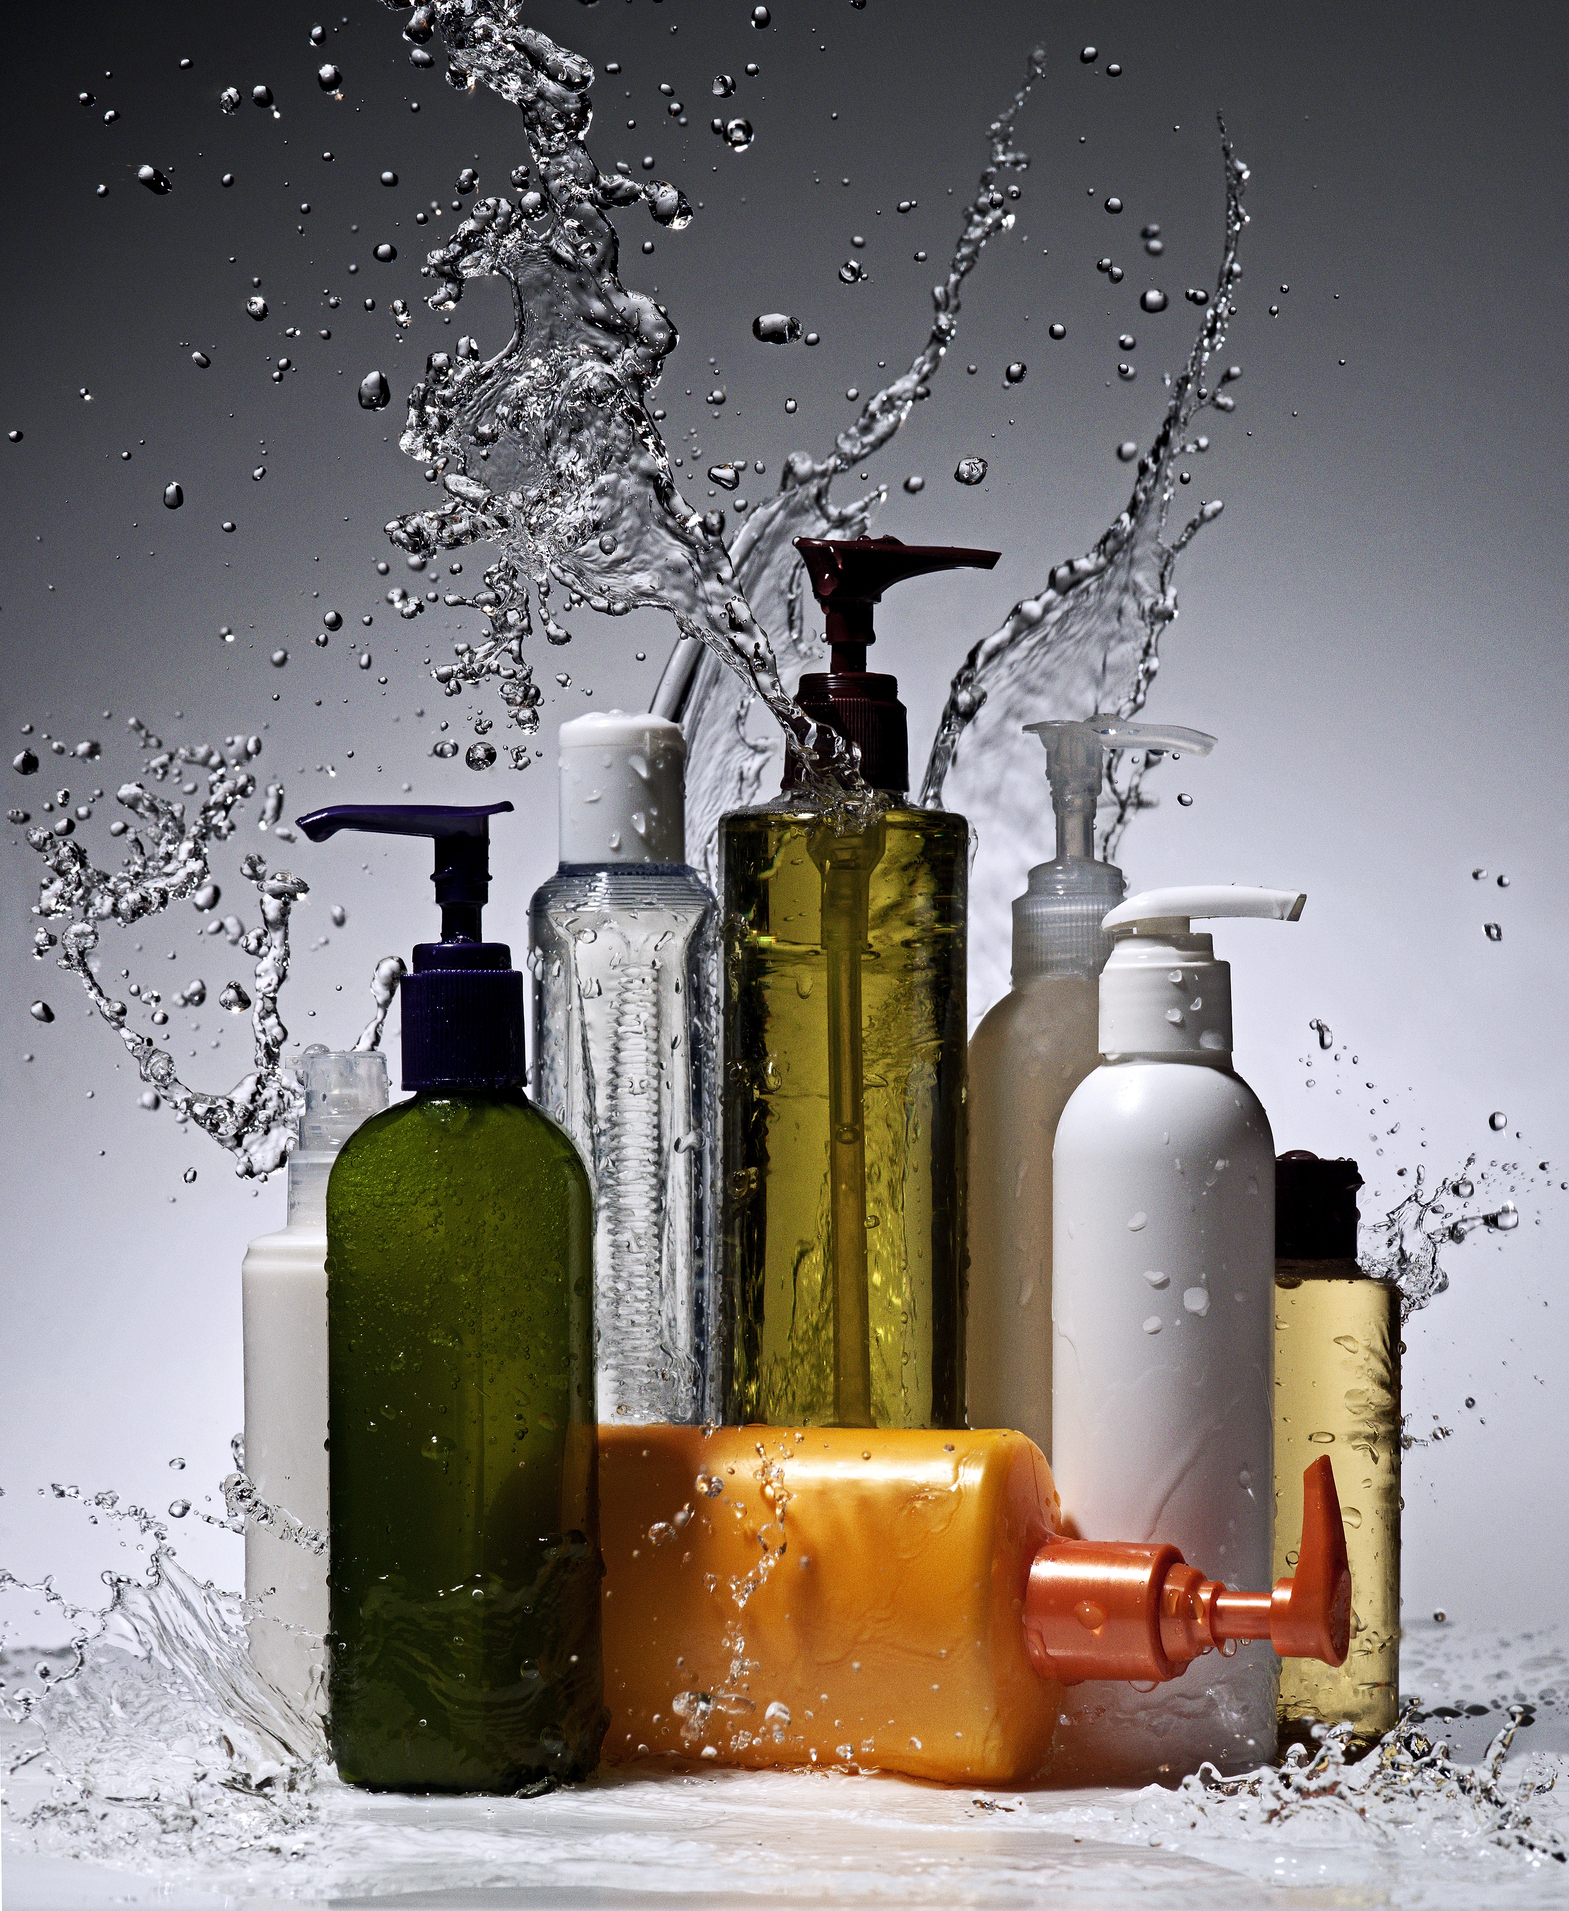 Skincare bottles set amid splashing water